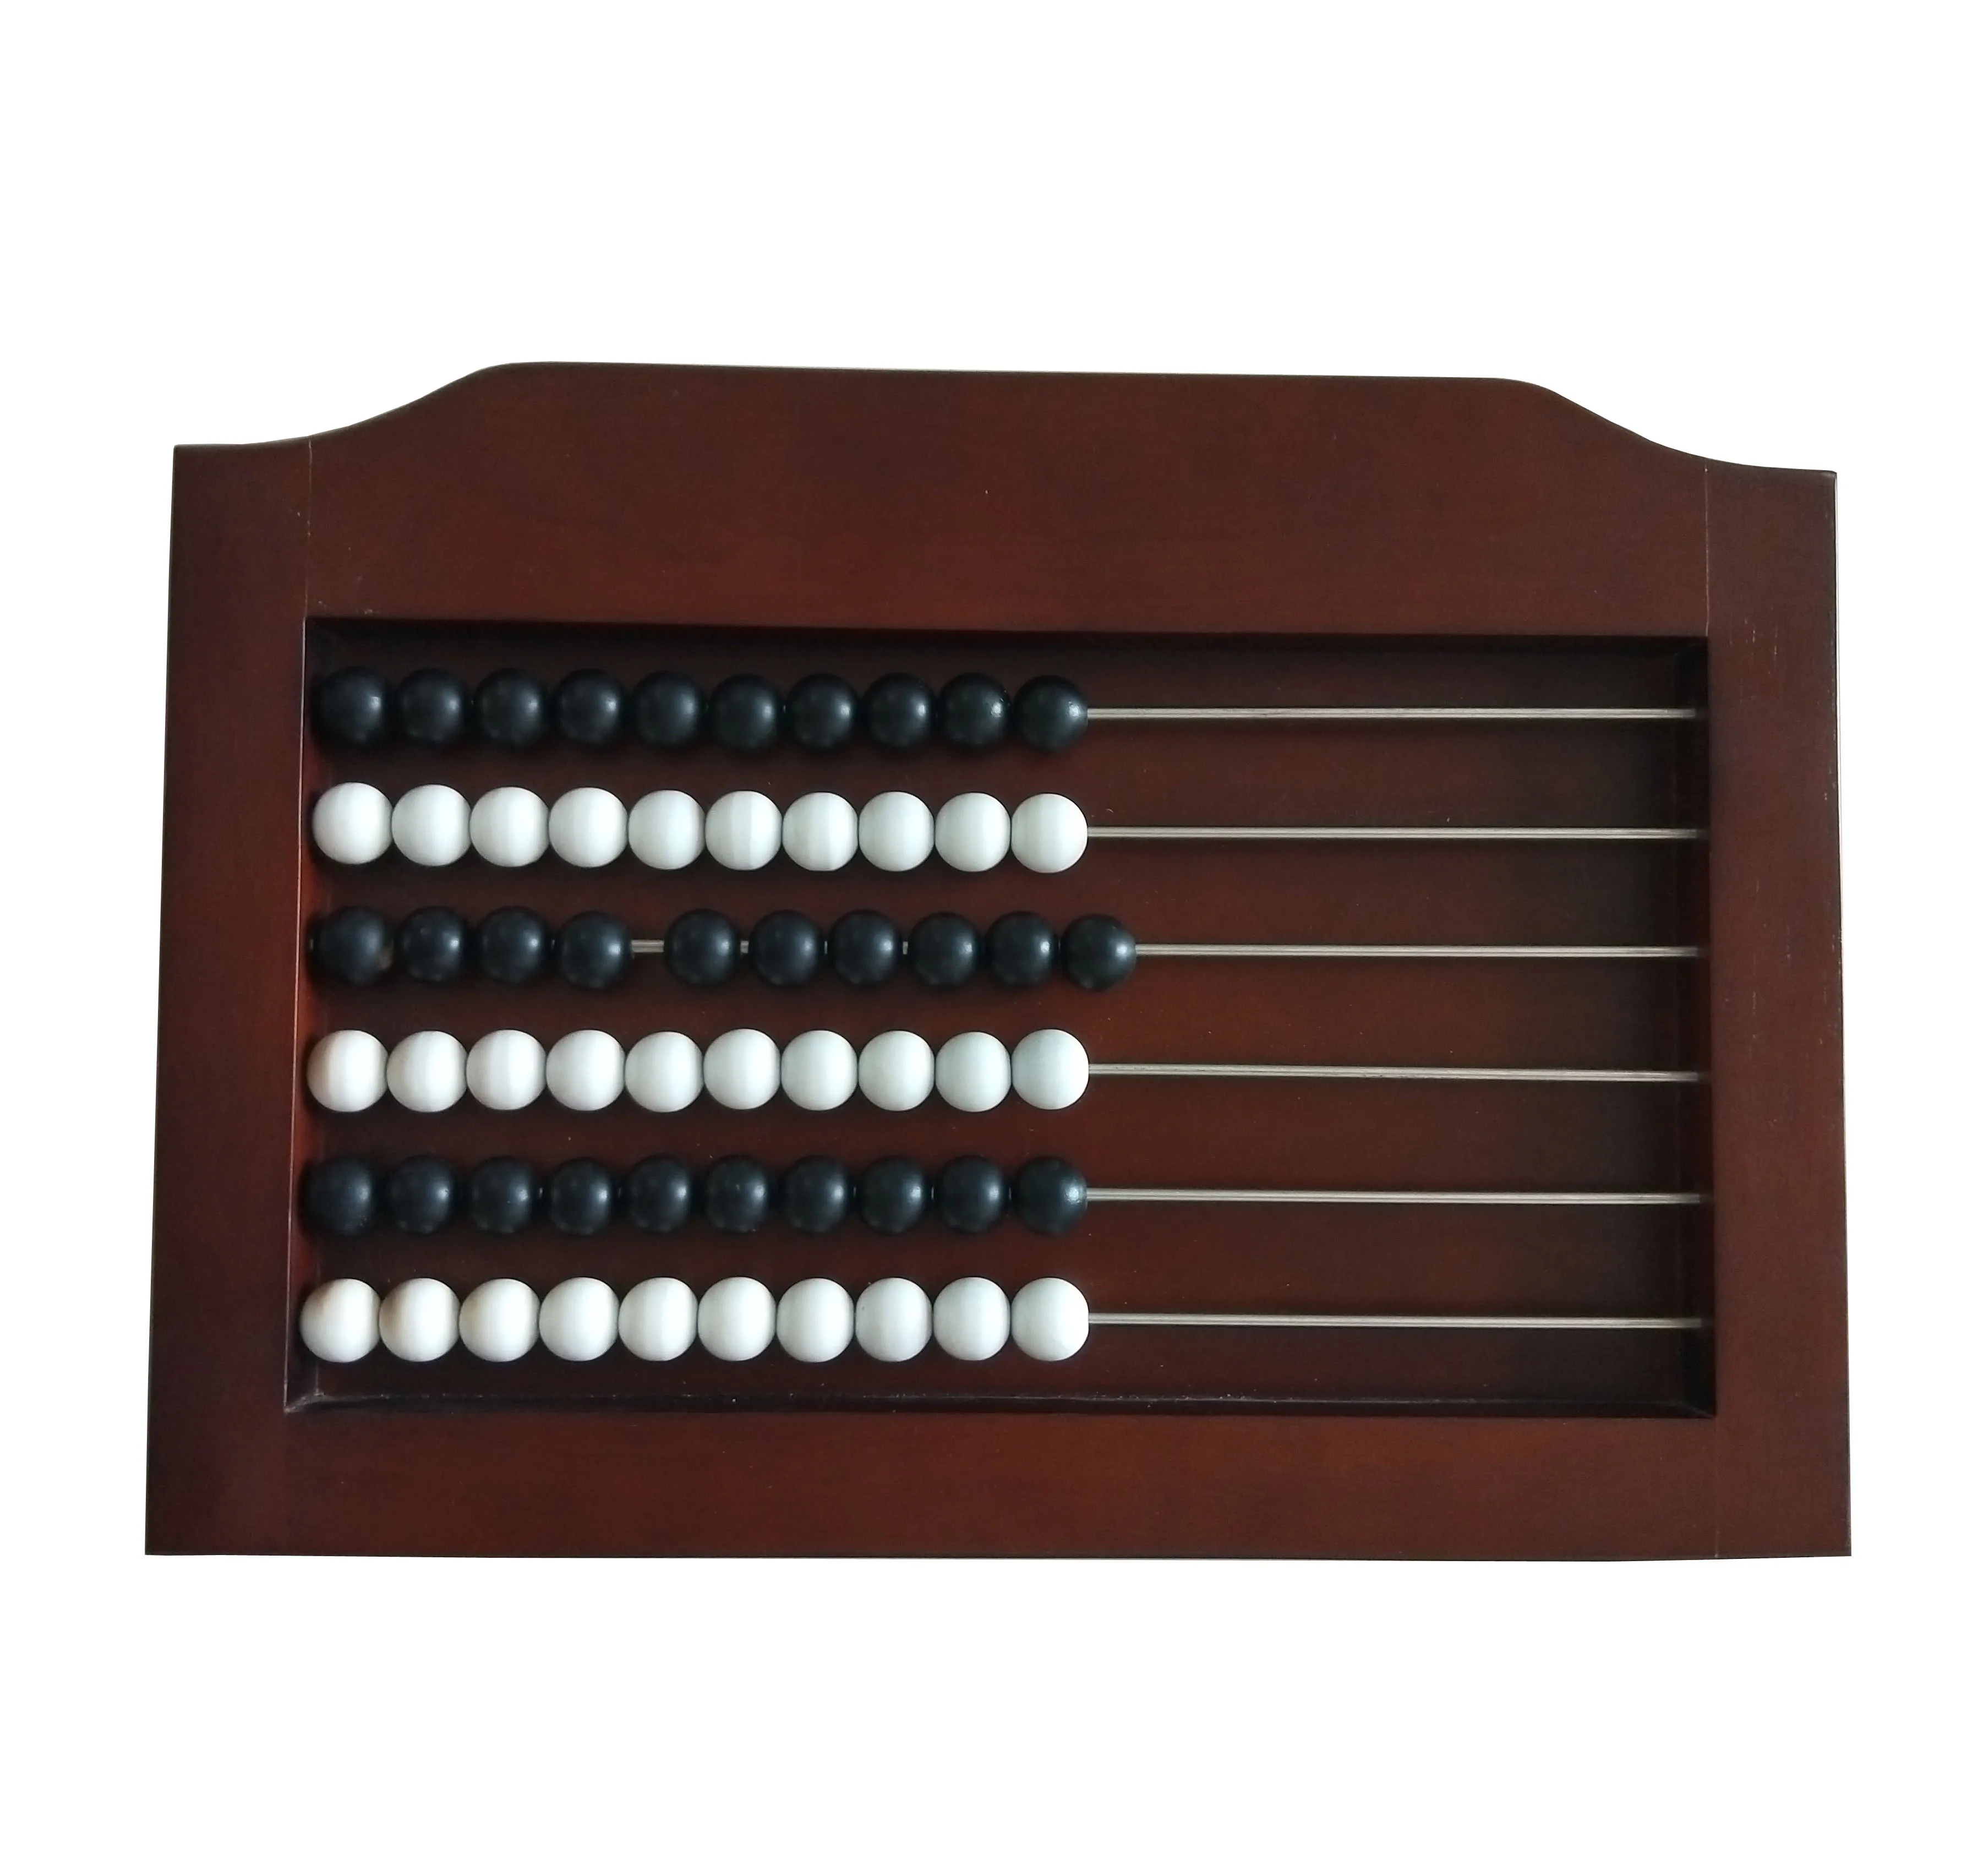 Source Wood Billiard ScoreBoard/ Snooker Scoreboard/Shuffleboard Scoreboard on m.alibaba